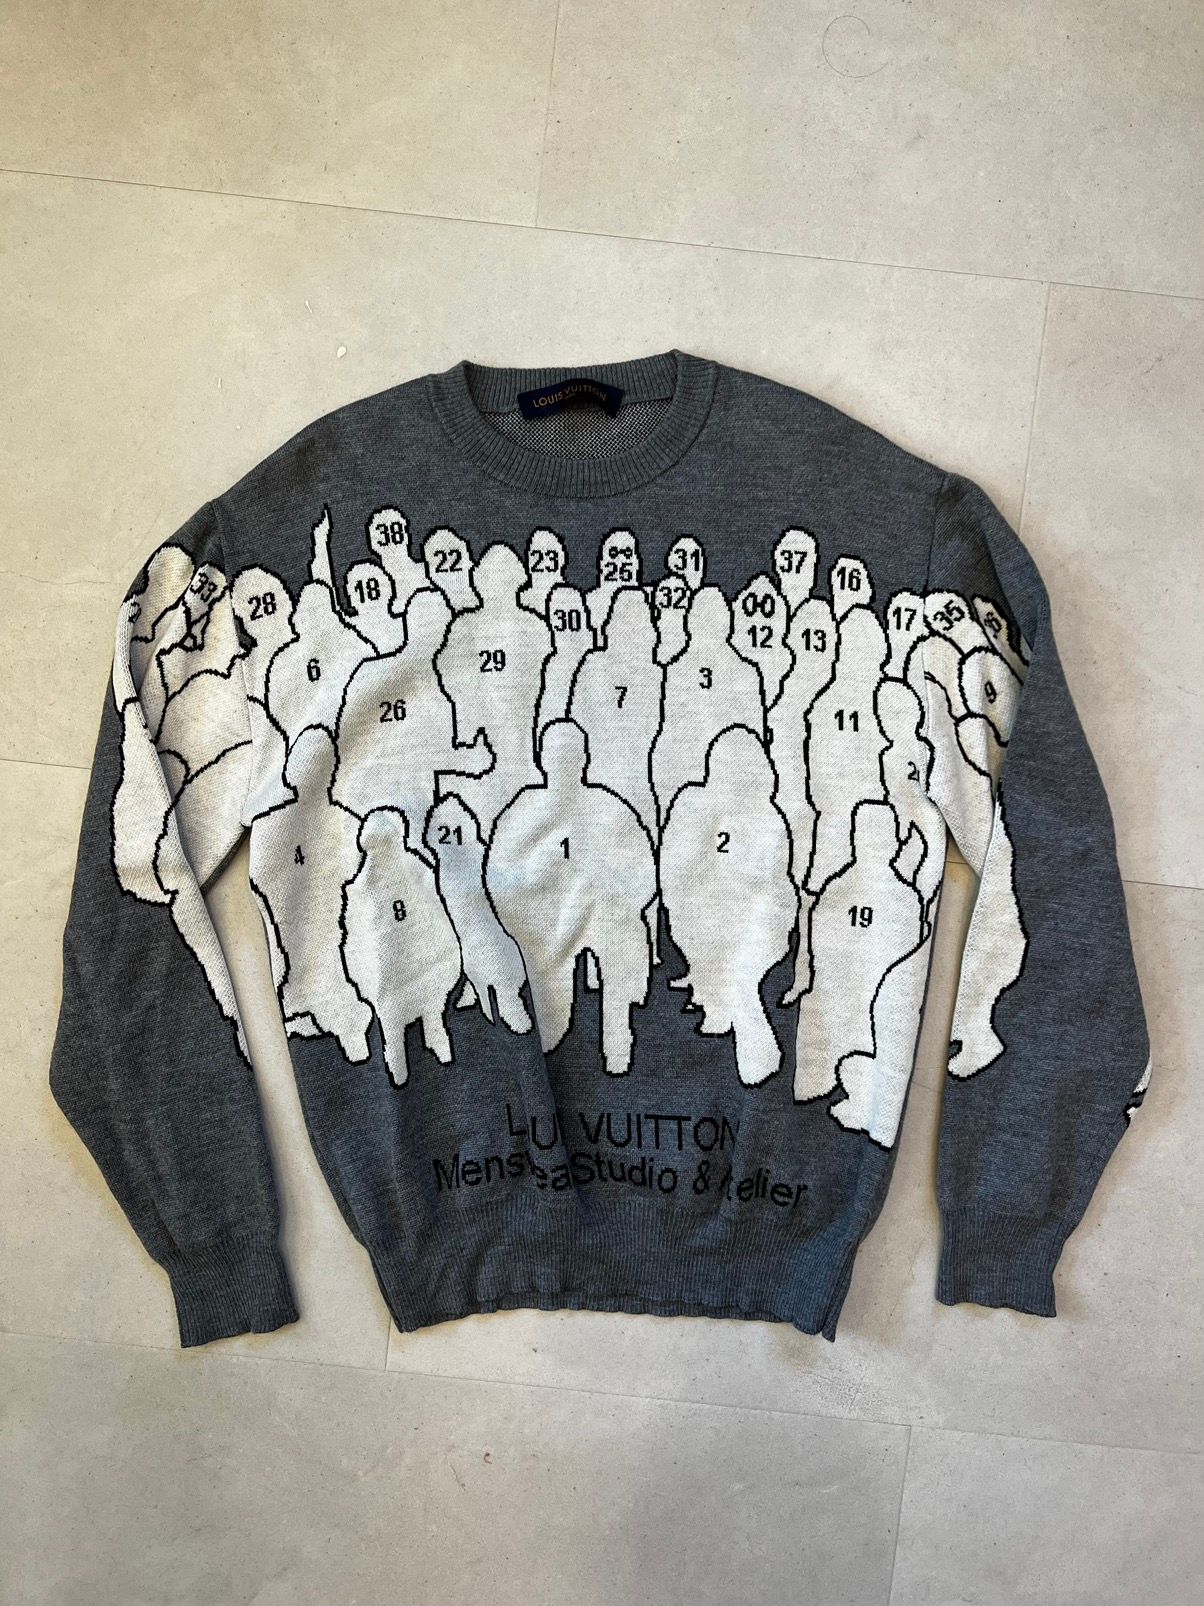 LOUIS VUITTON VIRGIL Abloh Monogram Gradient Sweatshirt Very Rare Sold Out  XXL $1,250.00 - PicClick